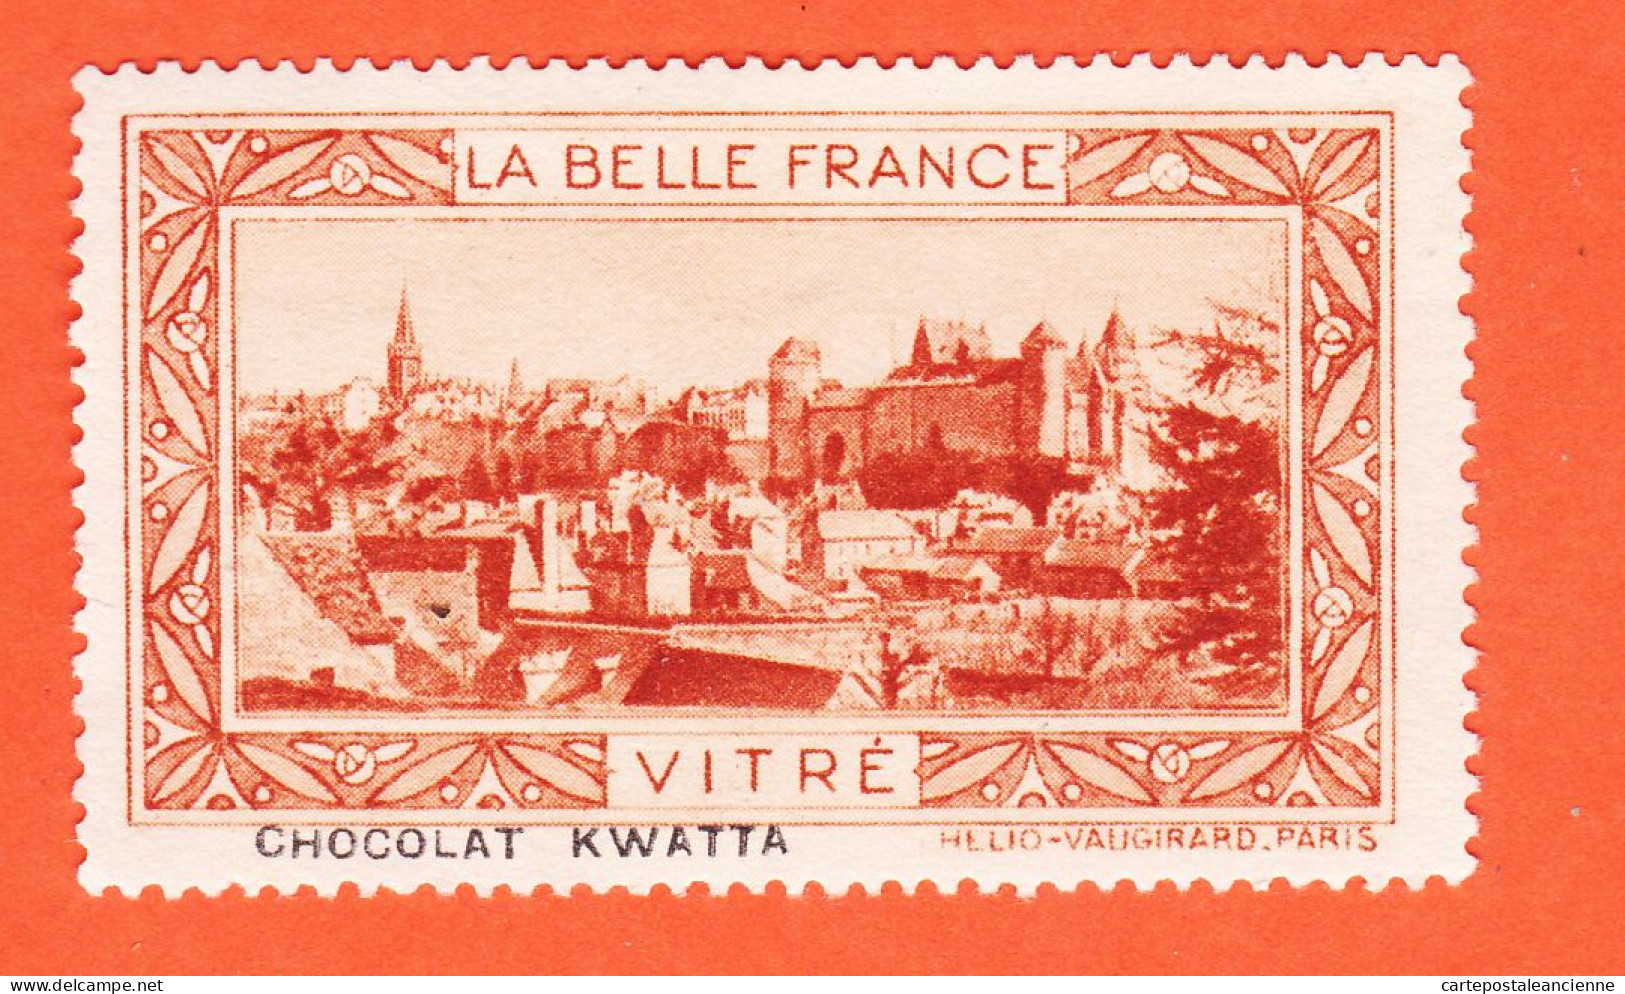 13000 / ⭐ ◉ VITRE (Orange) 35-Ille Vilaine Chateau Chocolat Pub KWATTA Vignette Collection BELLE FRANCE HELIO-VAUGIRARD - Turismo (Viñetas)